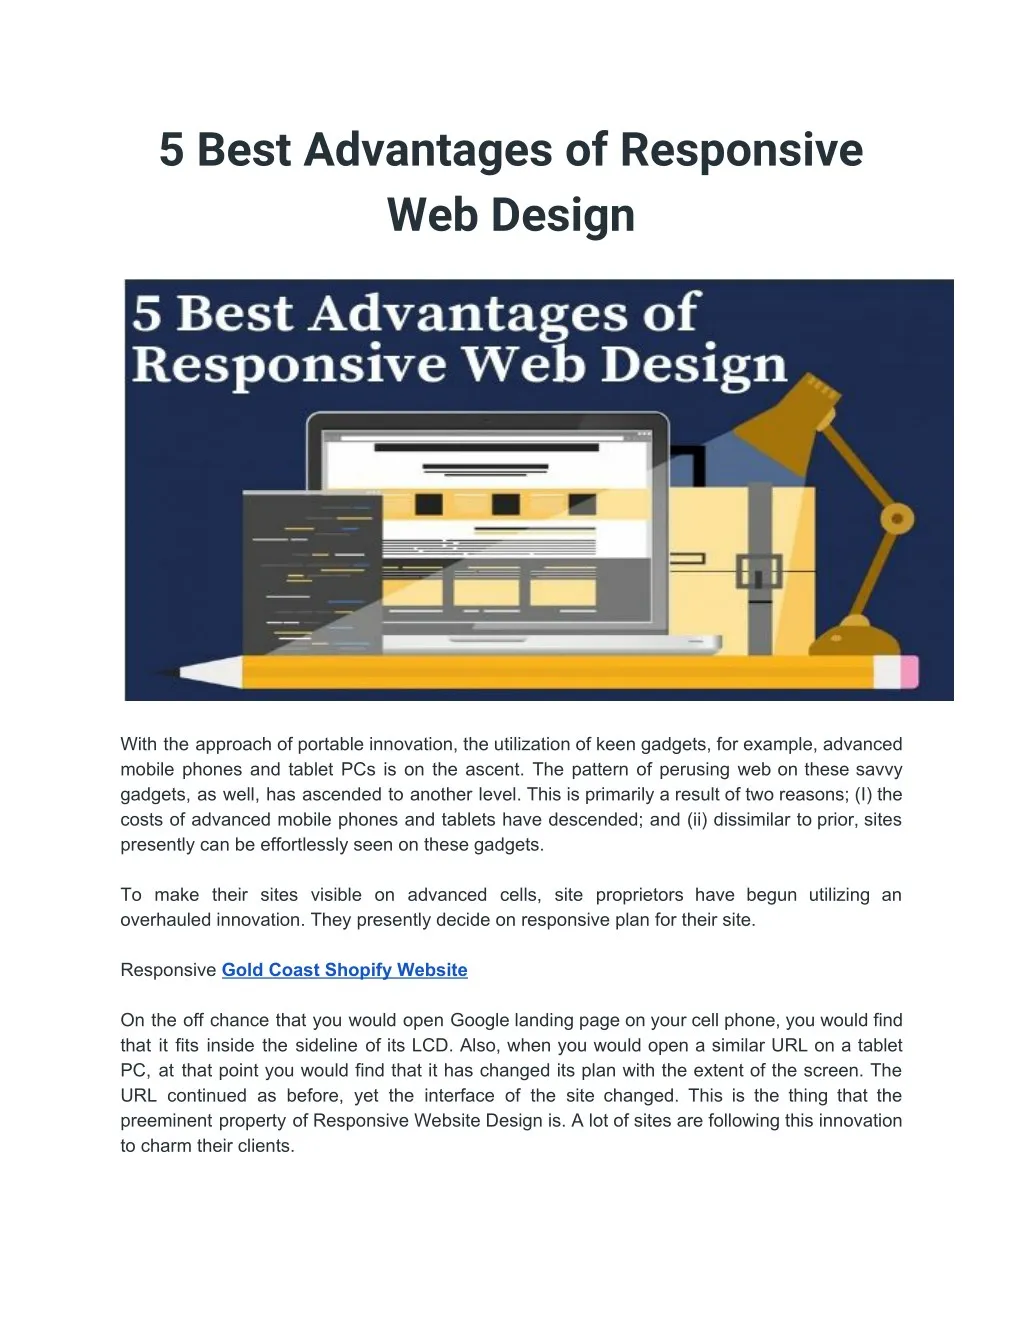 5 best advantages of responsive web design